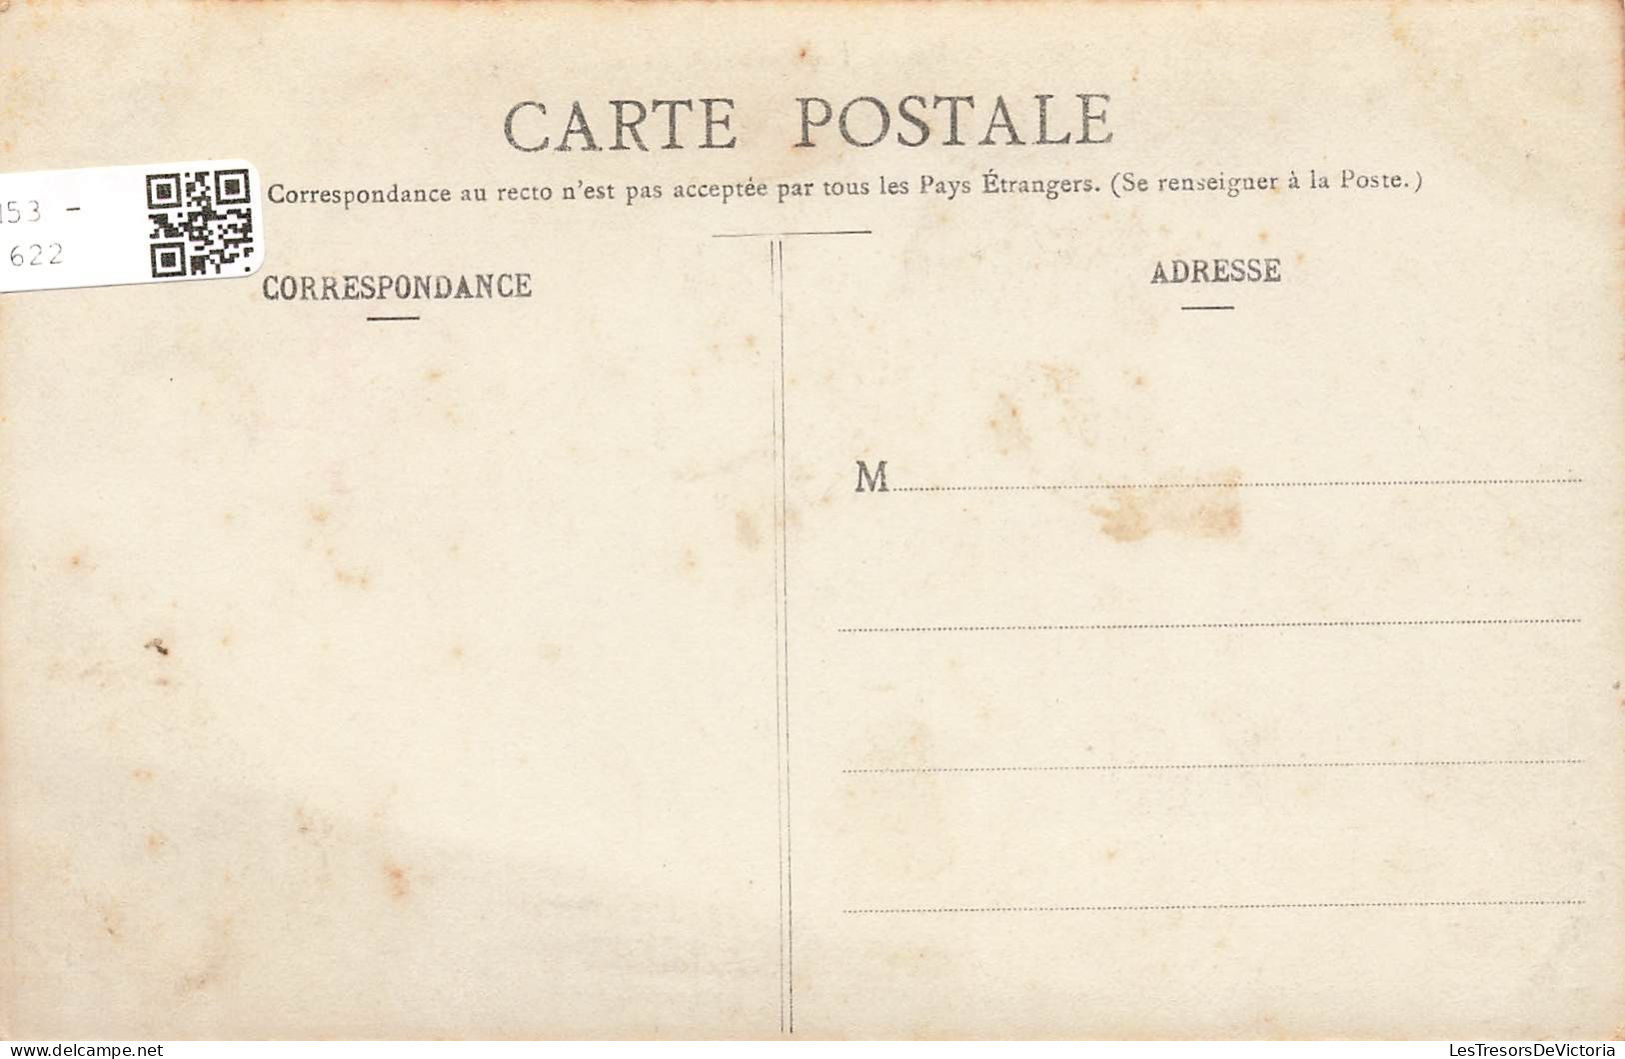 FRANCE - Brest - Vue Sur La Rade - Vue Générale - Bateaux - Vue Sur La Mer - Animé - Carte Postale Ancienne - Brest